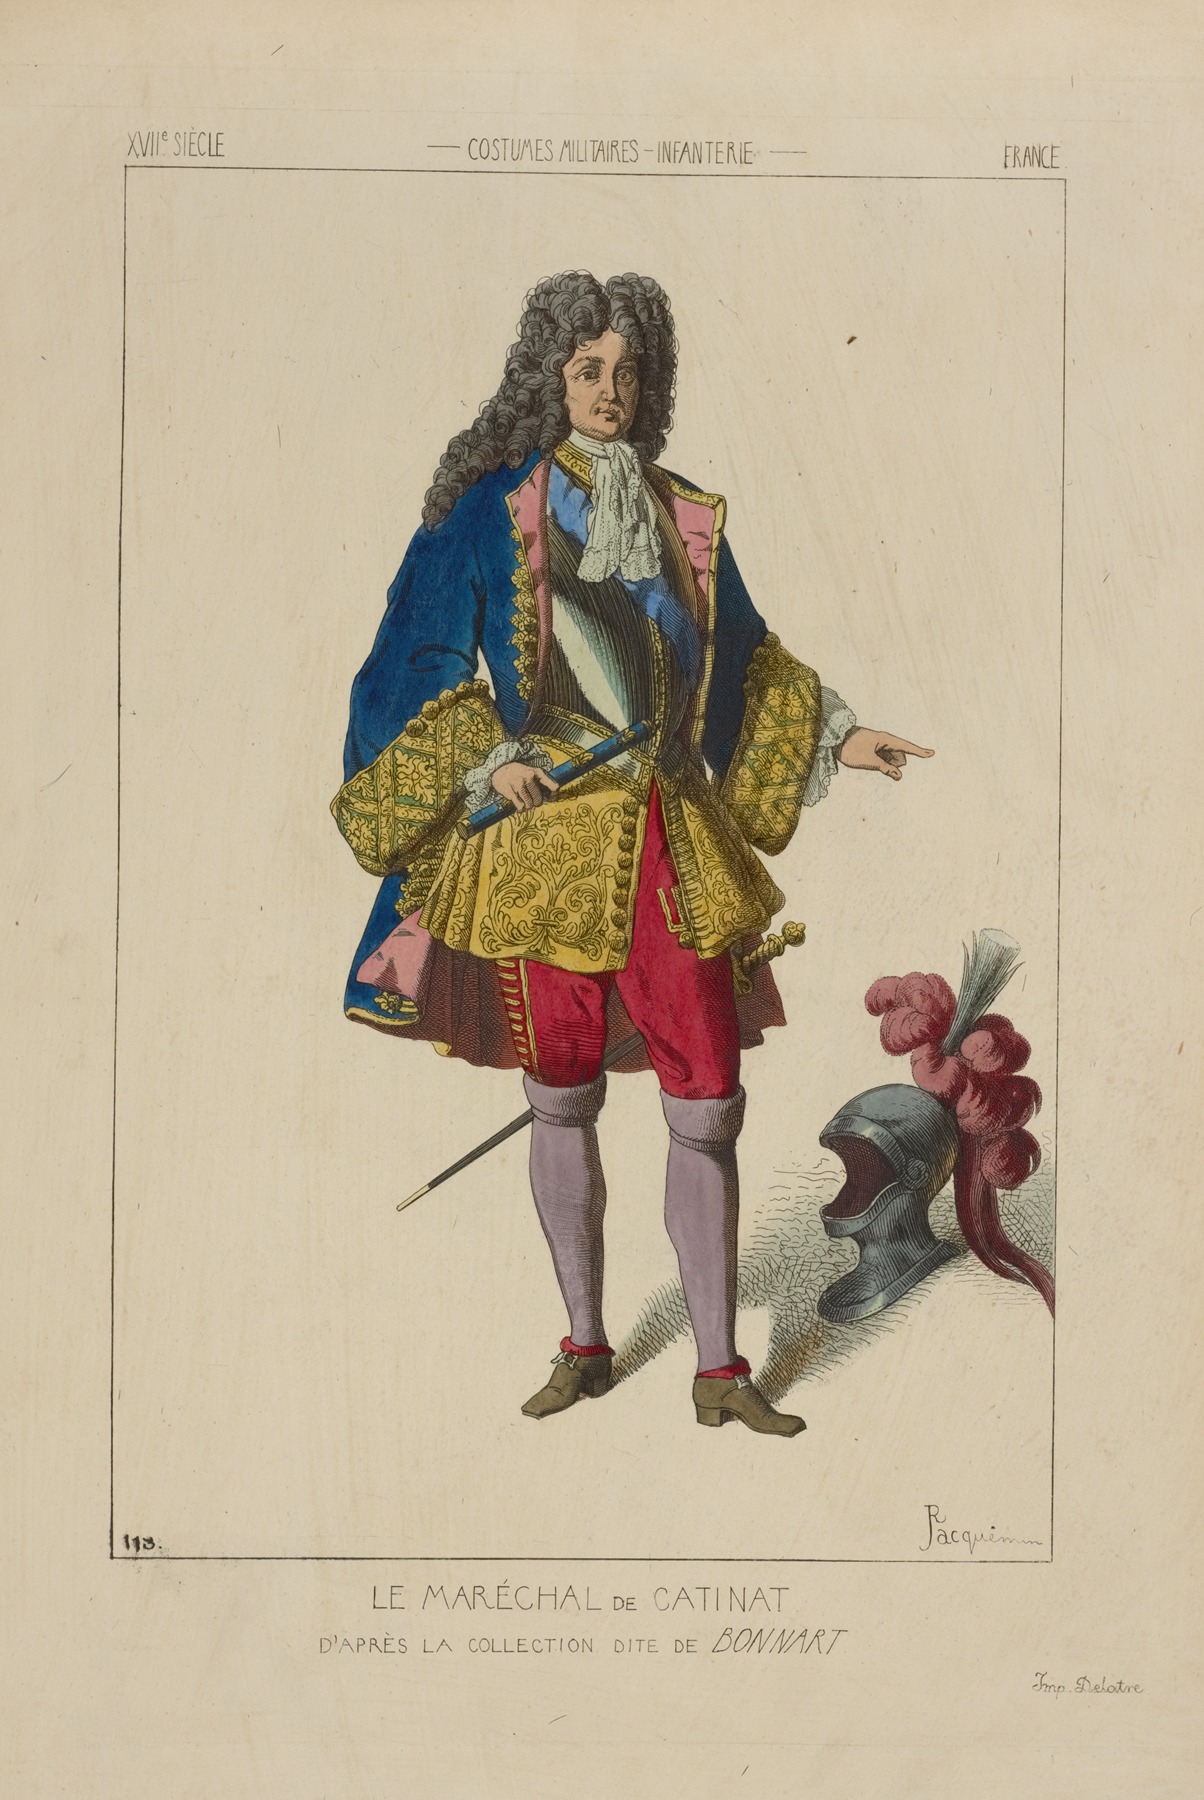 Raphaël Jacquemin - Le maréchal de Catinat. D’après la collection dite de Bonnart. XVIIe siècle, costumes militaires, infanterie, France.